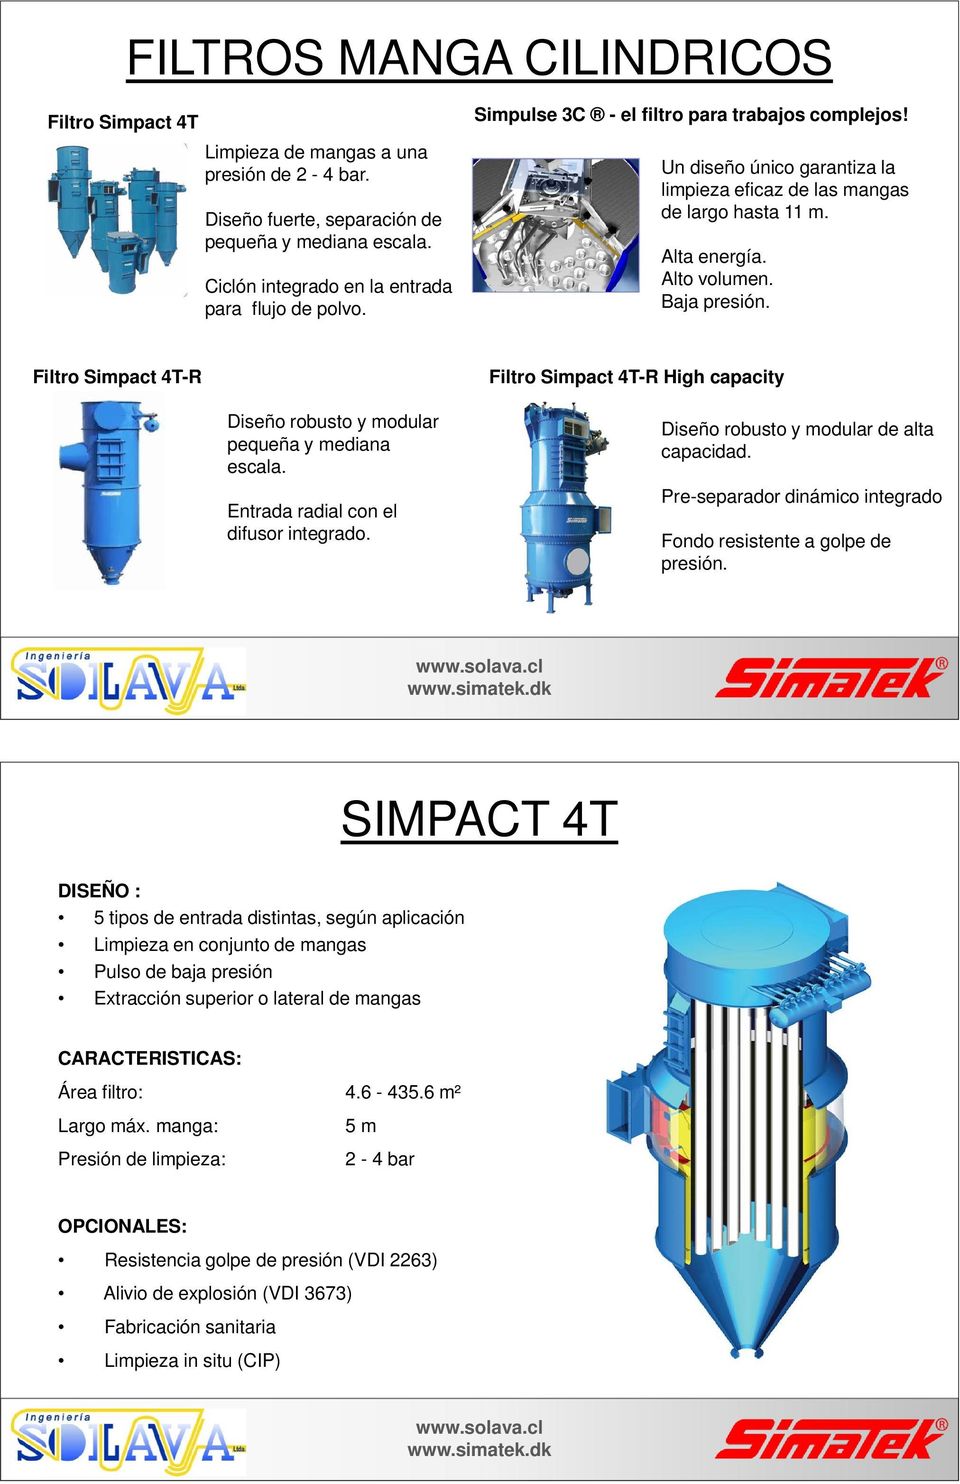 Filtro Simpact 4T-R Diseño robusto y modular pequeña y mediana escala. Entrada radial con el difusor integrado. Filtro Simpact 4T-R High capacity Diseño robusto y modular de alta capacidad.